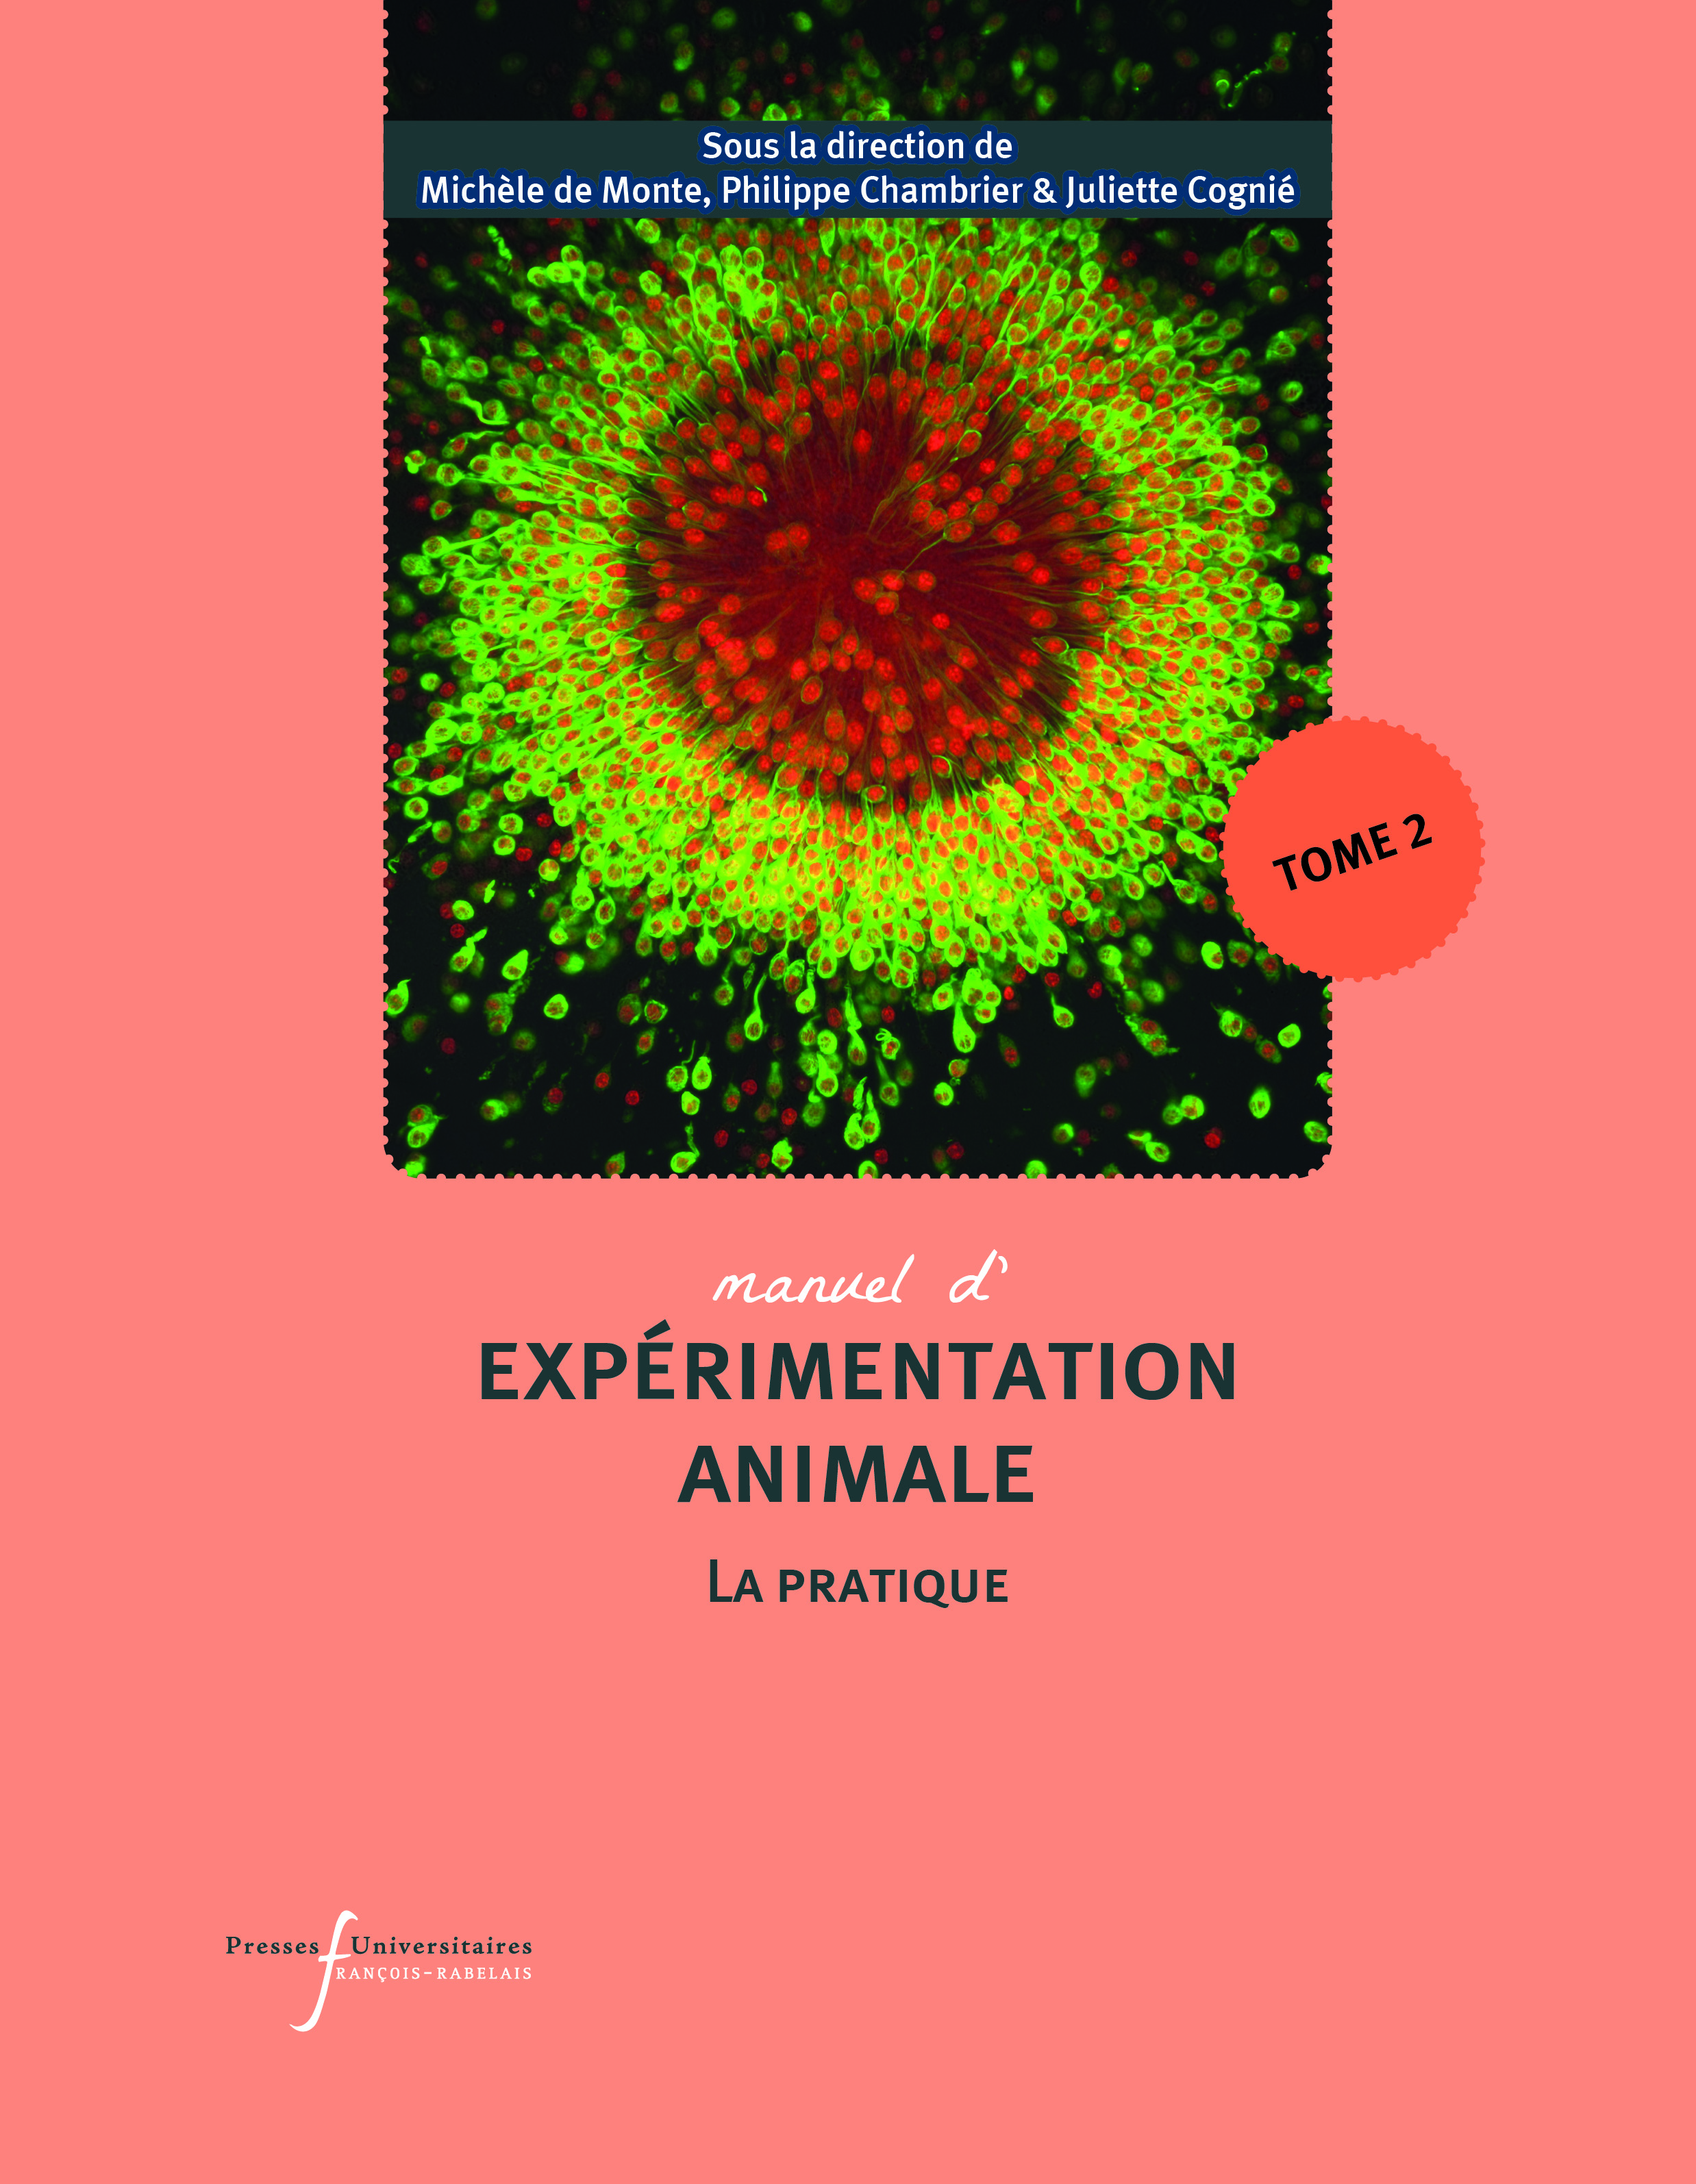 Manuel d’expérimentation animale – La pratique (Tome 2)